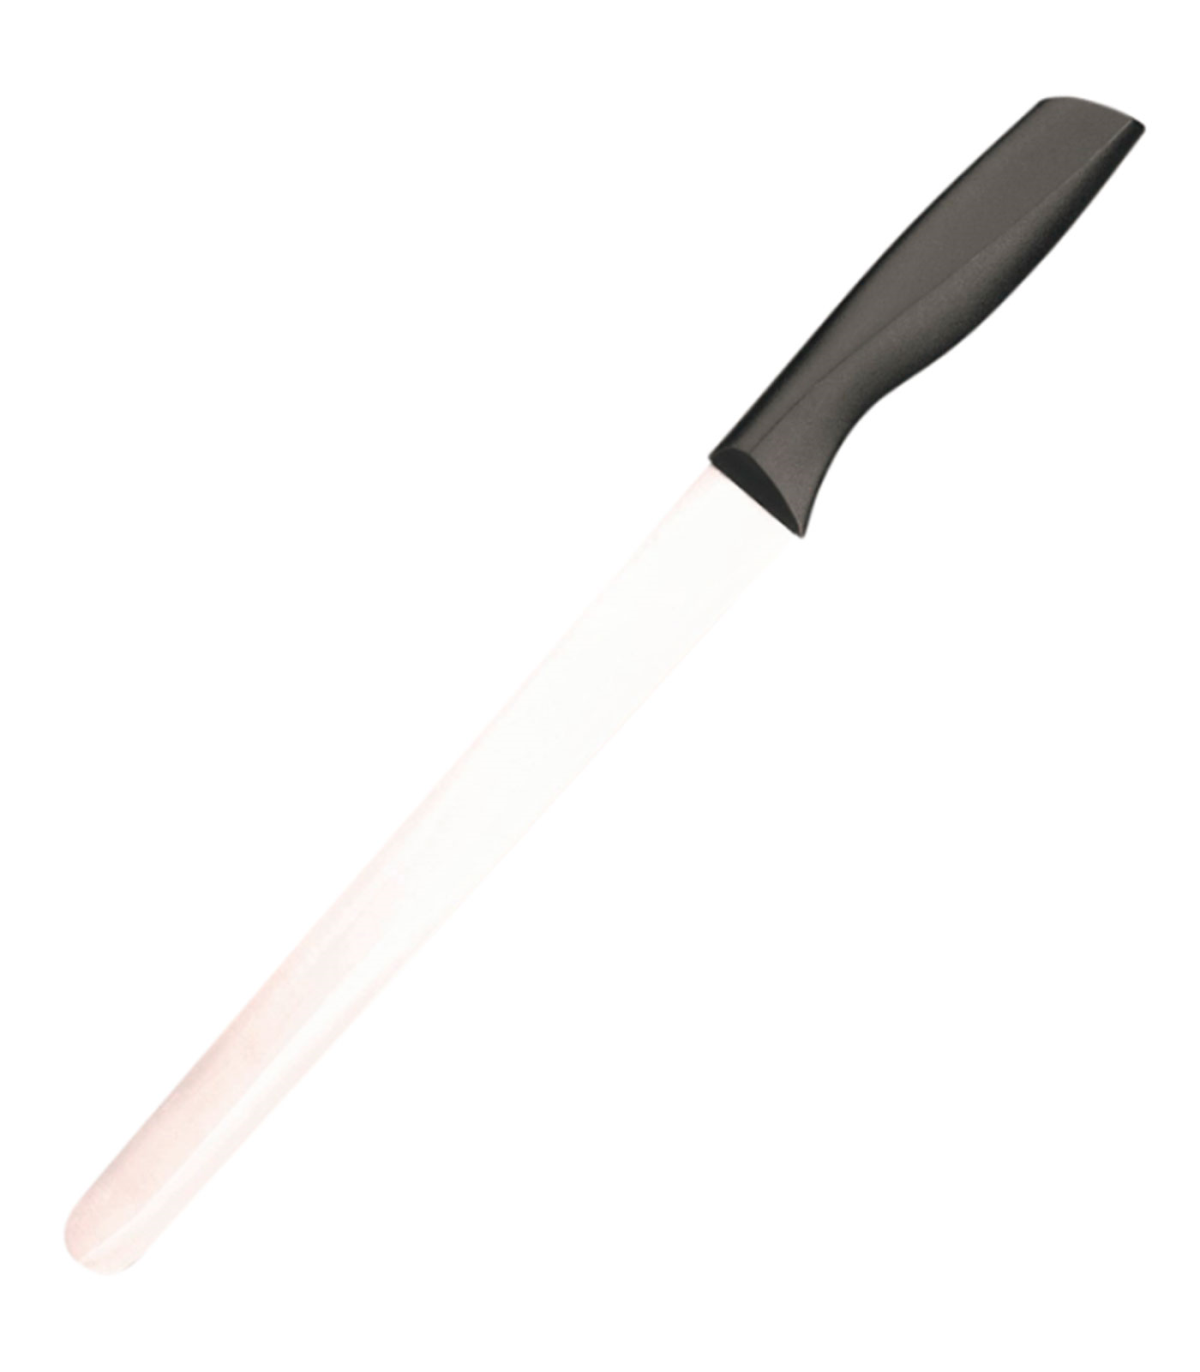 Tradineur - Cuchillo jamonero de acero inoxidable, hoja de 25 cm y mango  ergonómico de plástico, cuchillo para cortado de jamón